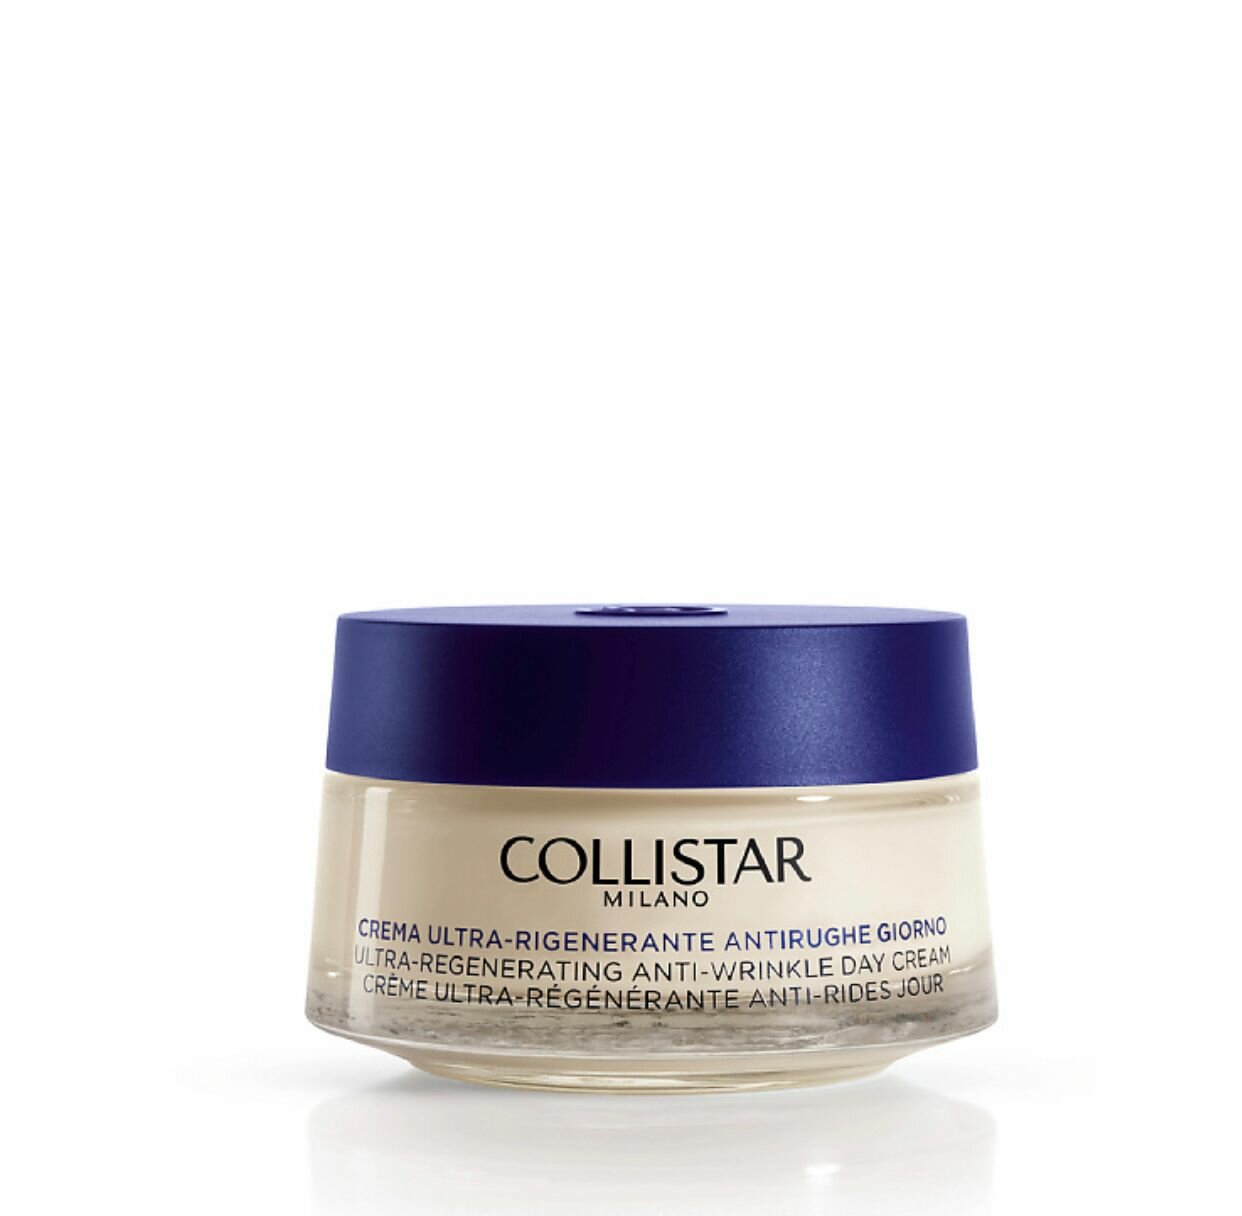 COLLISTAR Интенсивный восстанавливающий дневной крем против морщин (Ultra-regenerating anti-wrinkle day cream) 50 мл